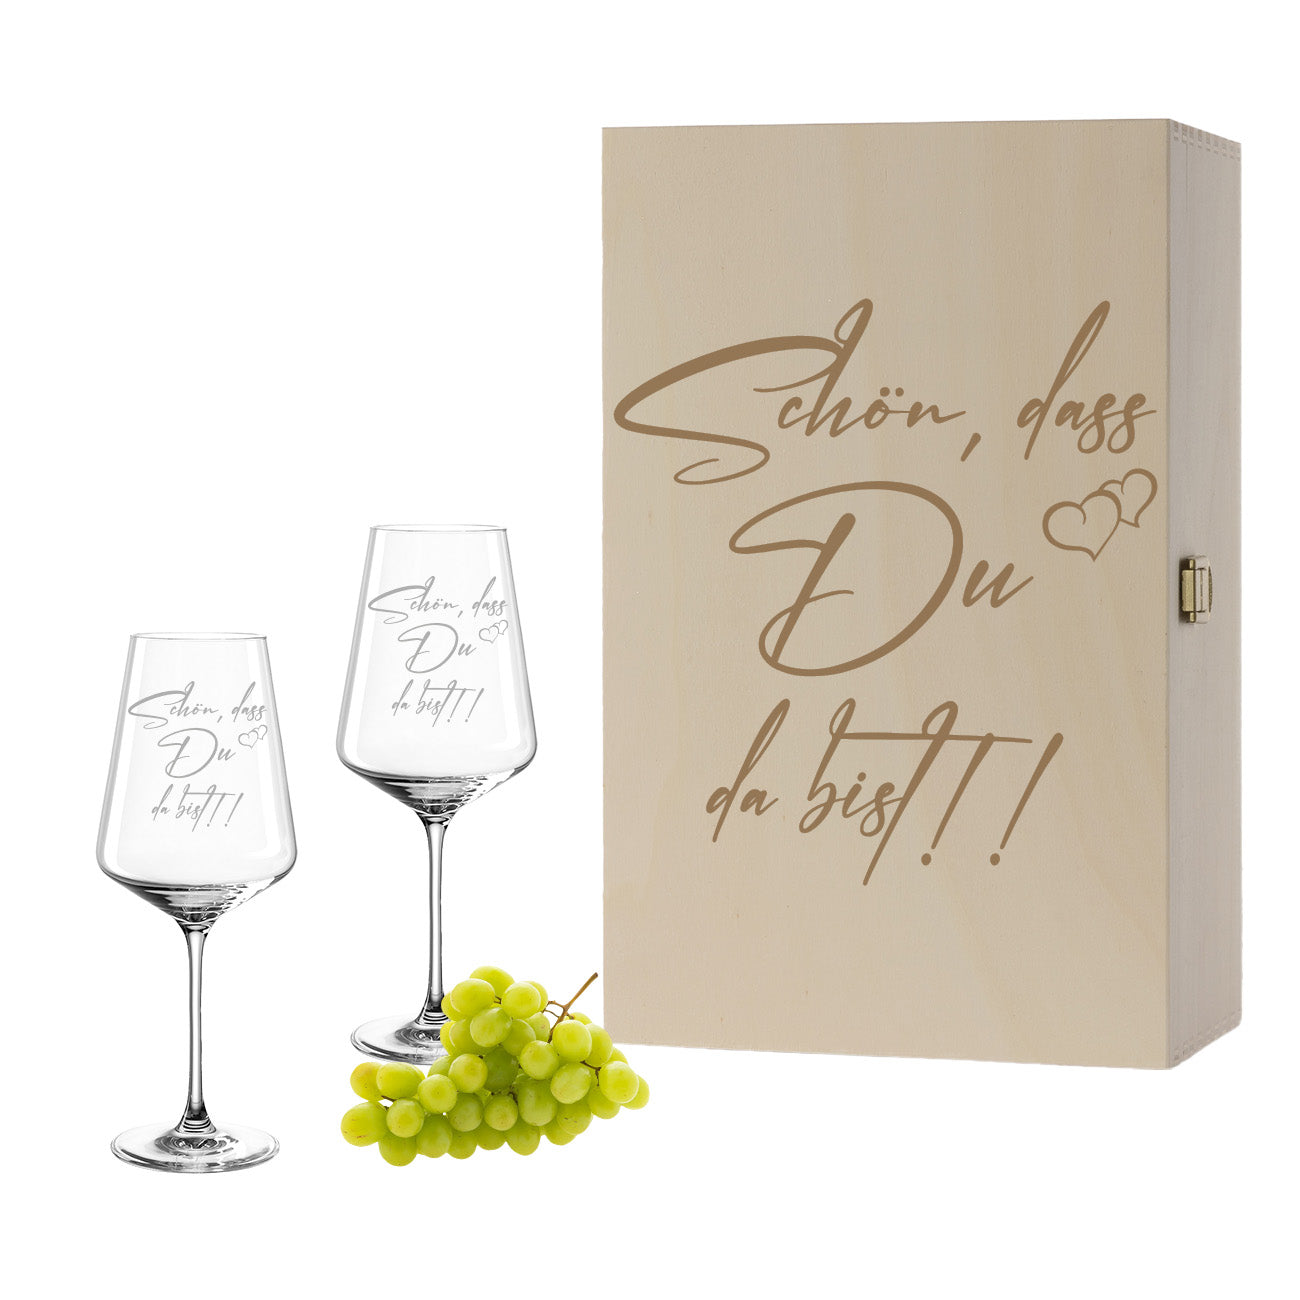 Weinglas mit Gravur Leonardo Puccini "SCHÖN, DASS DU DA BIST!!" 2 Gläser und Holzbox groß